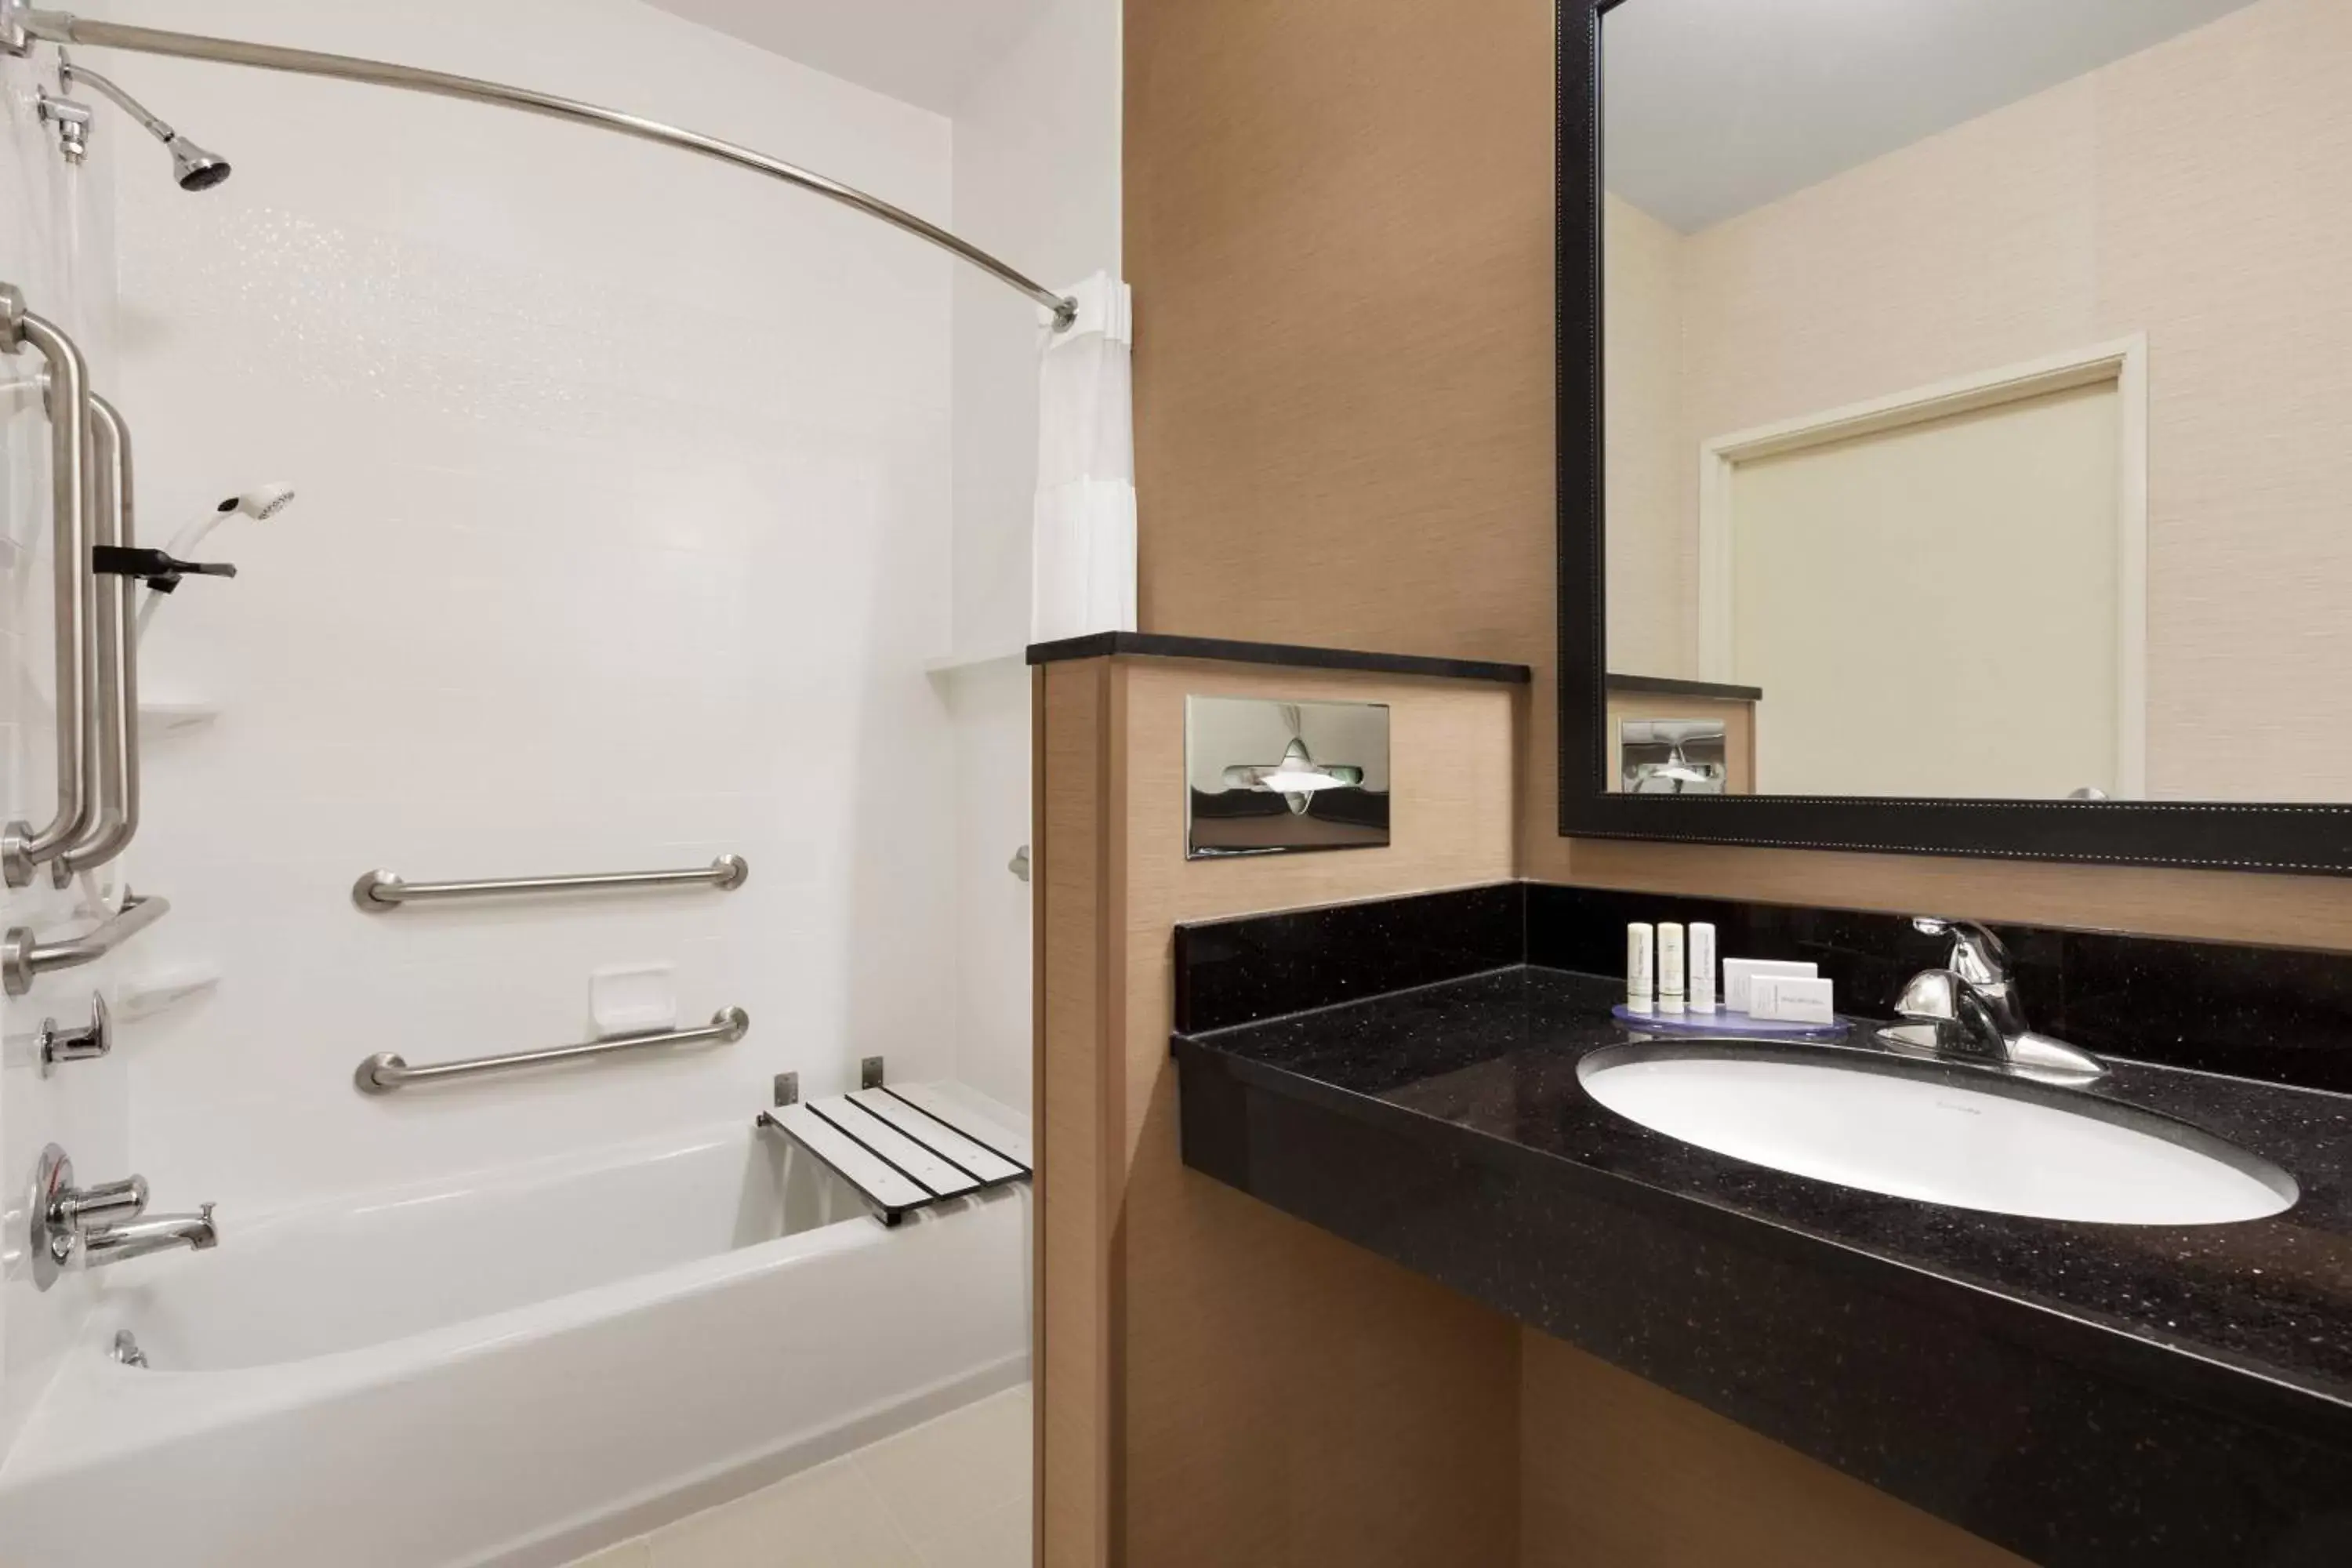 Bathroom in Fairfield Inn & Suites Omaha East/Council Bluffs, IA